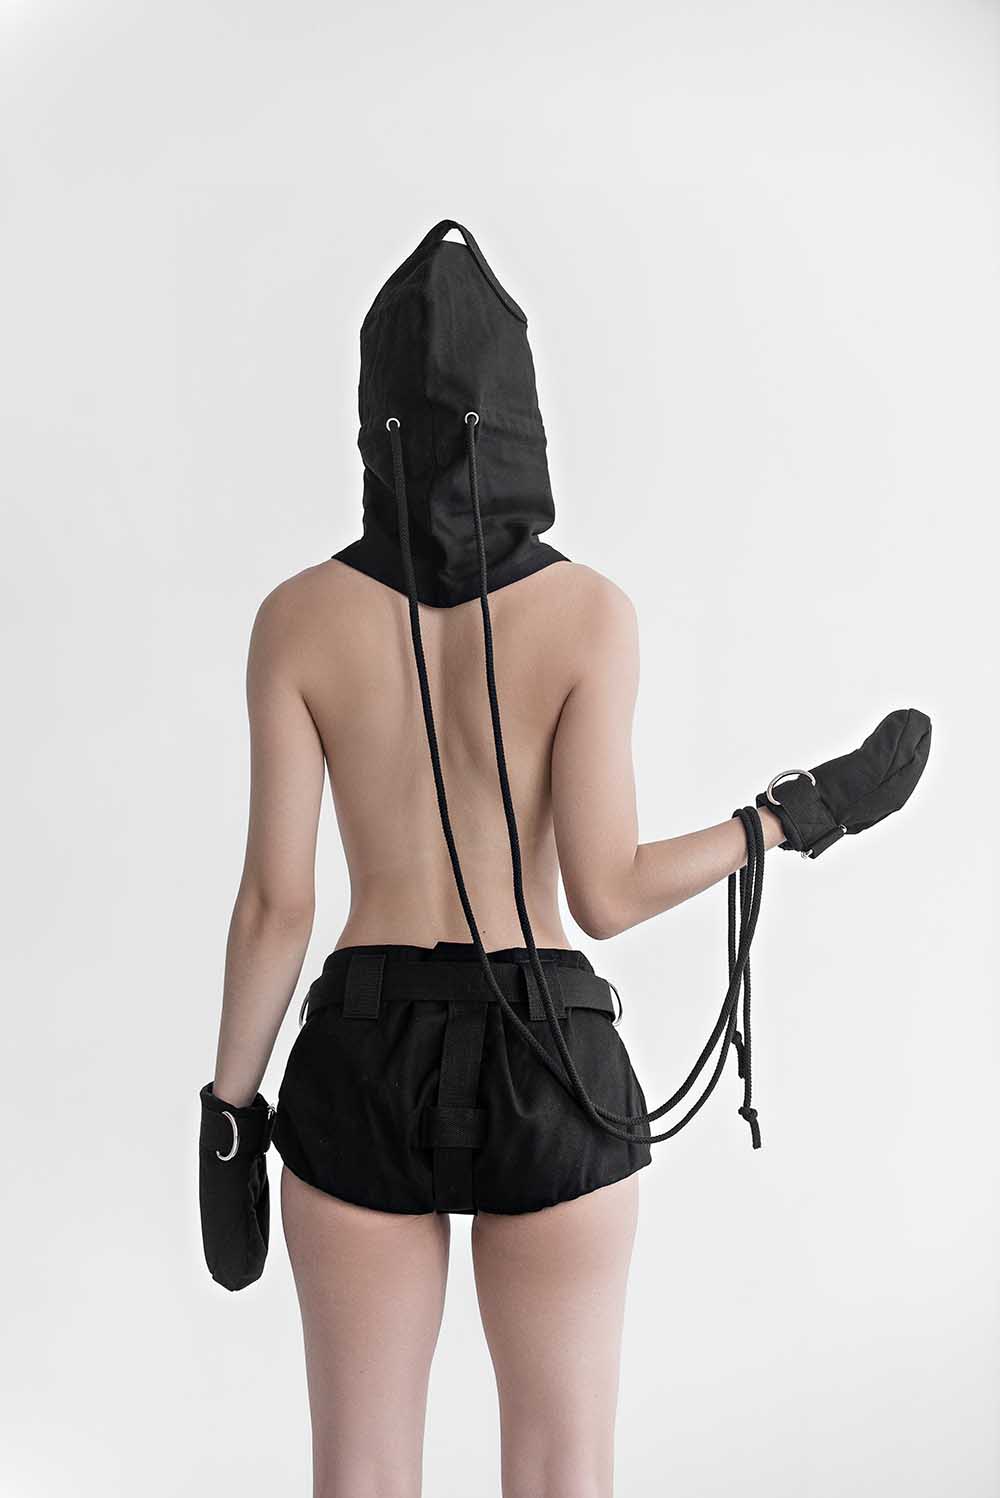 Bondage Hood, blindfold hood with holes for breathing. Black